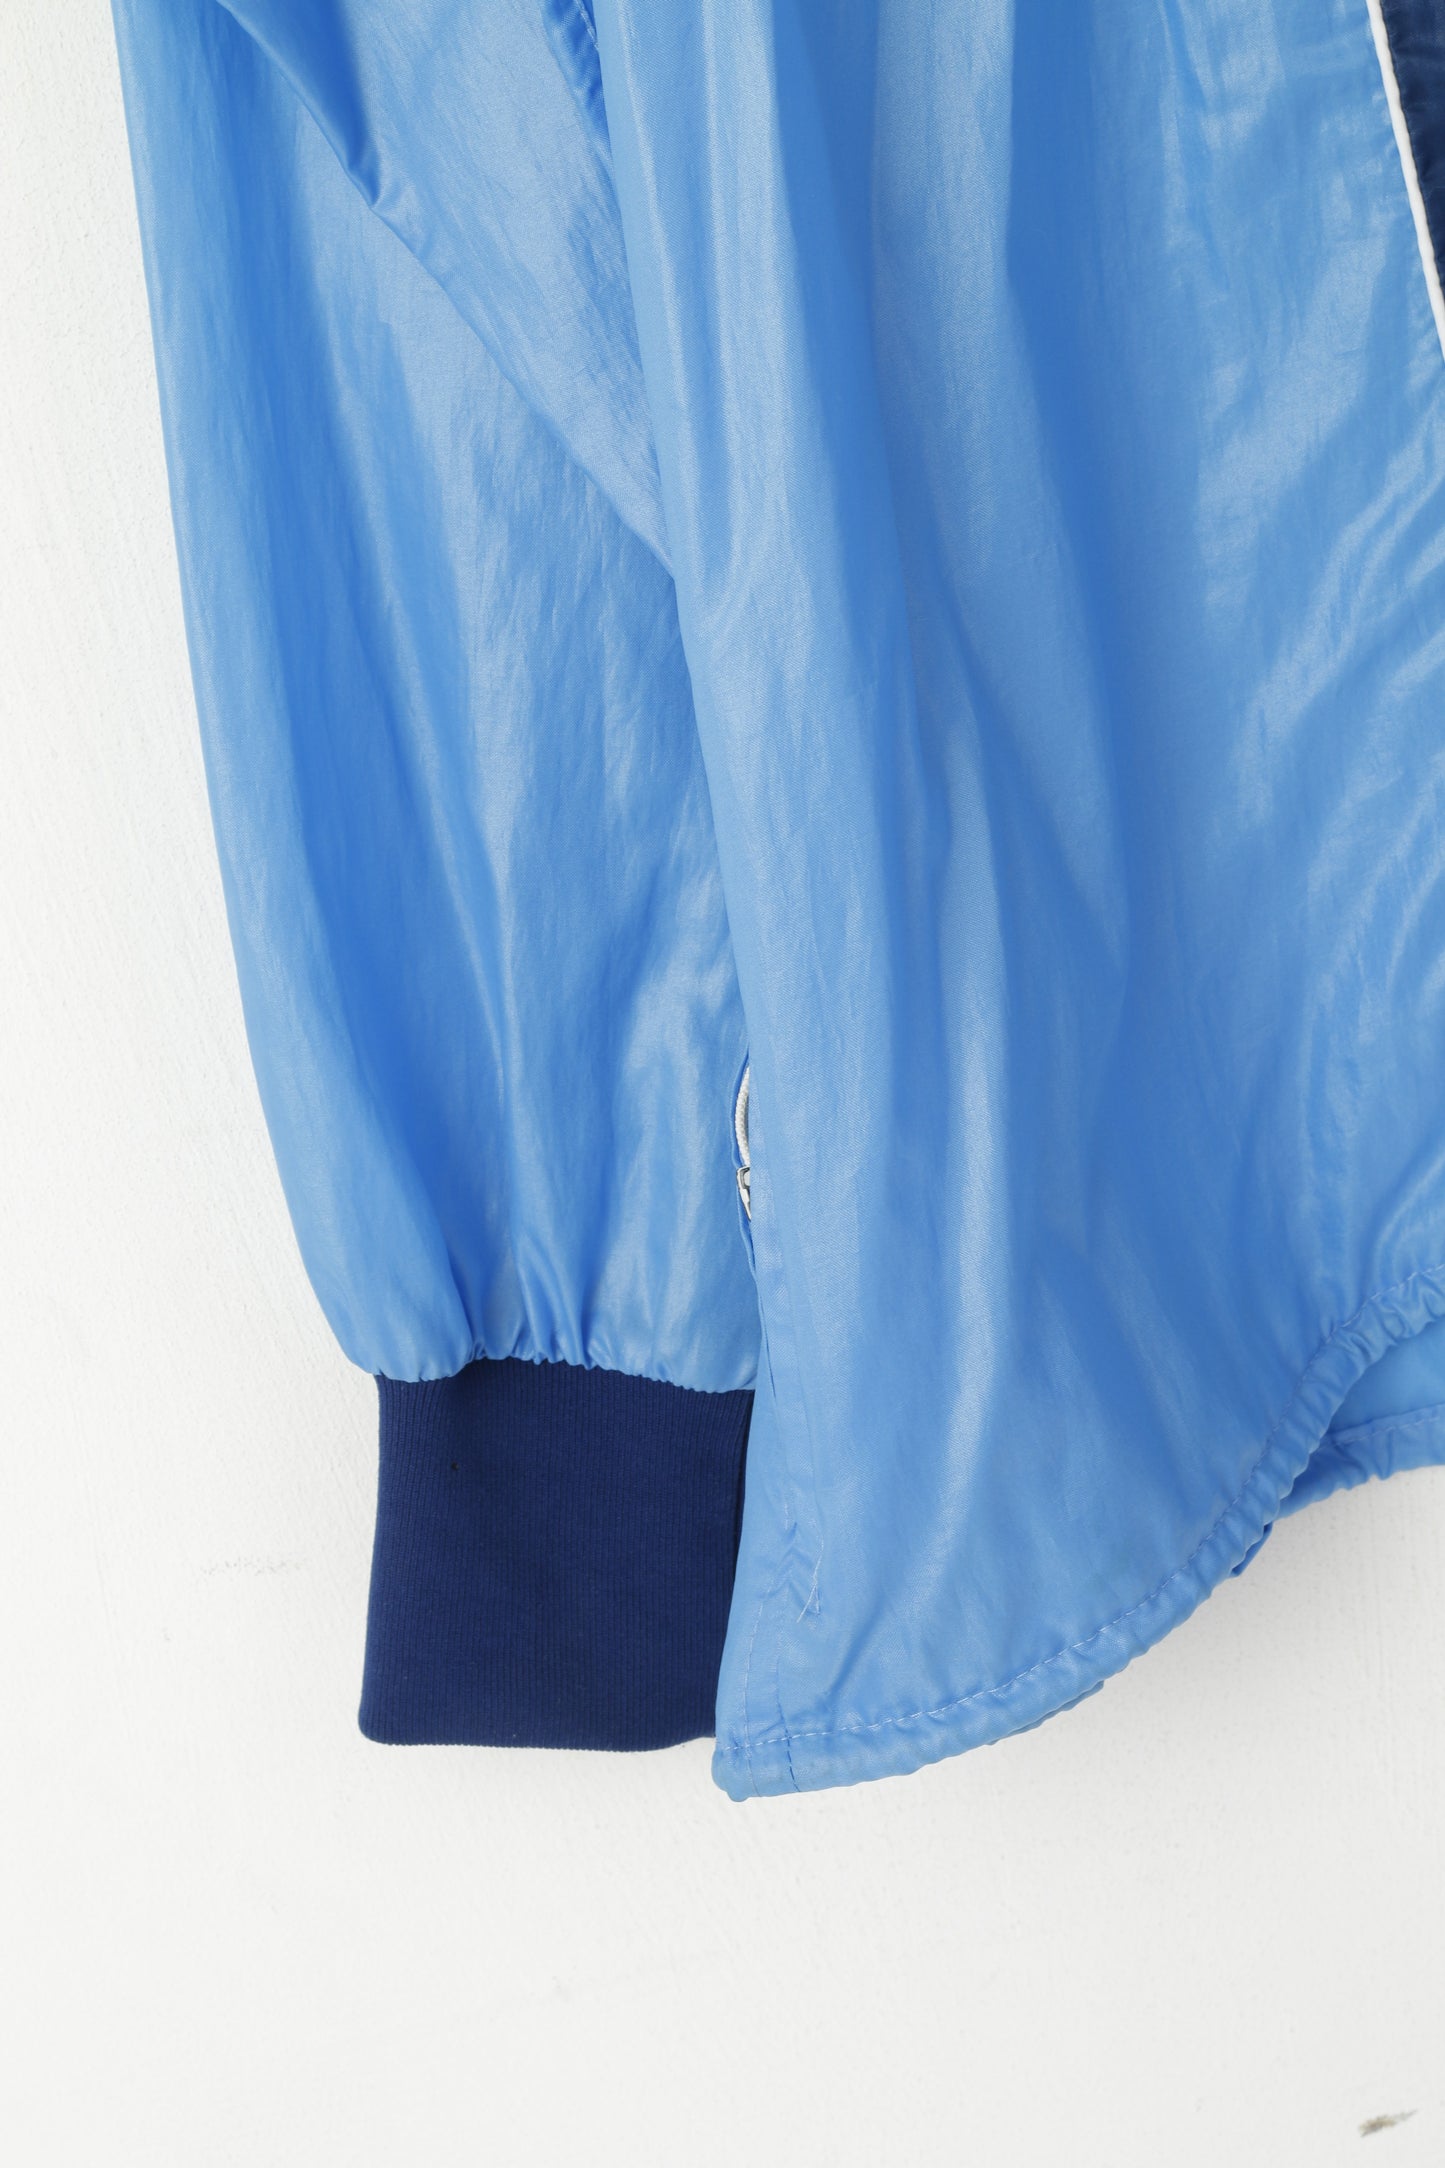 New Line Giacca XL da uomo in nylon blu Danimarca Abbigliamento sportivo con zip intera Top leggero